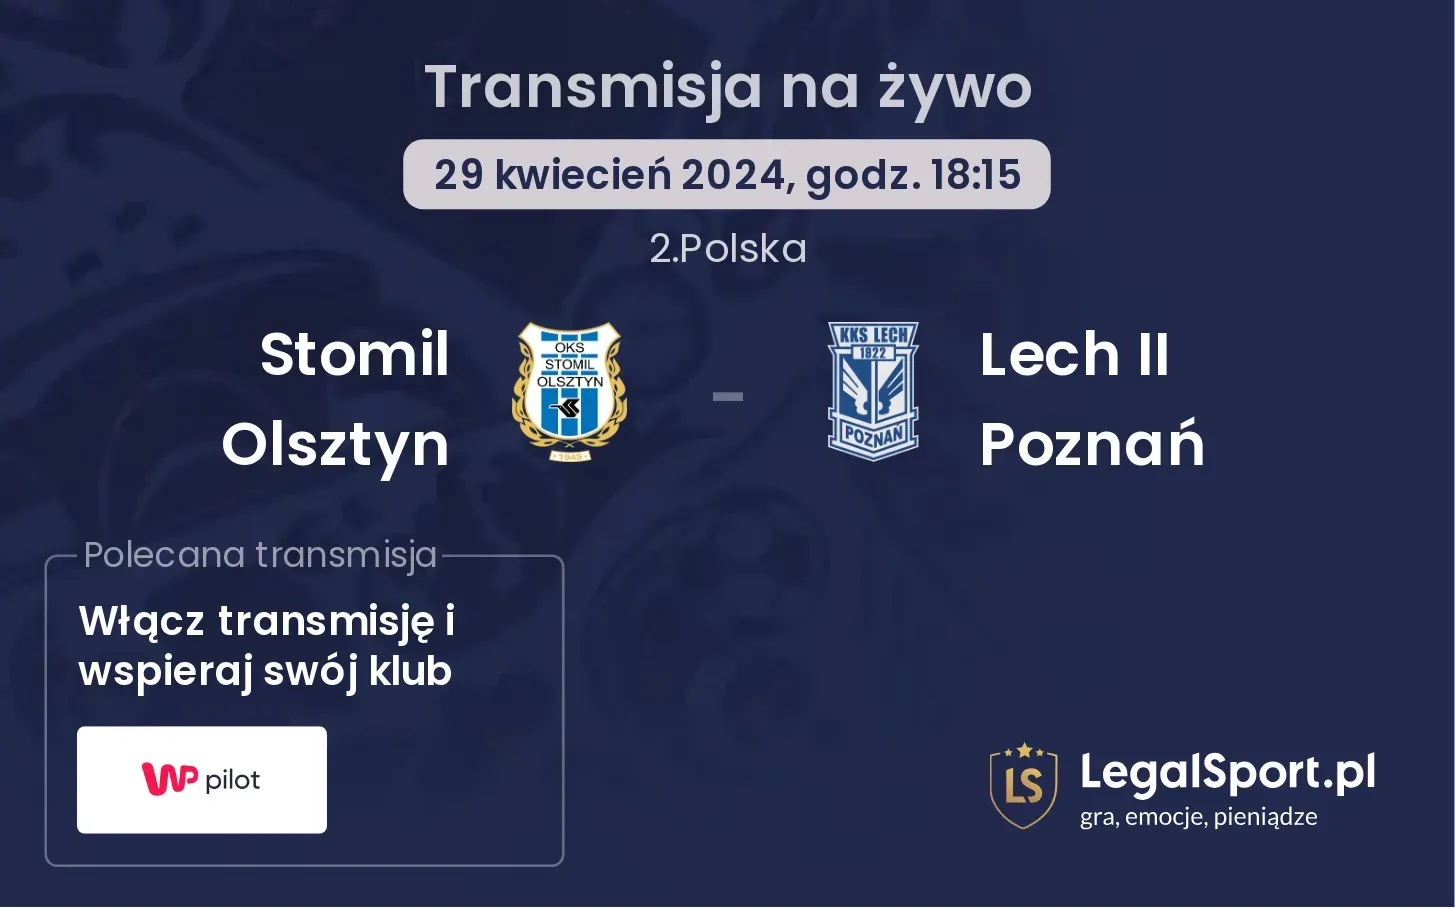 Stomil Olsztyn - Lech II Poznań transmisja na żywo